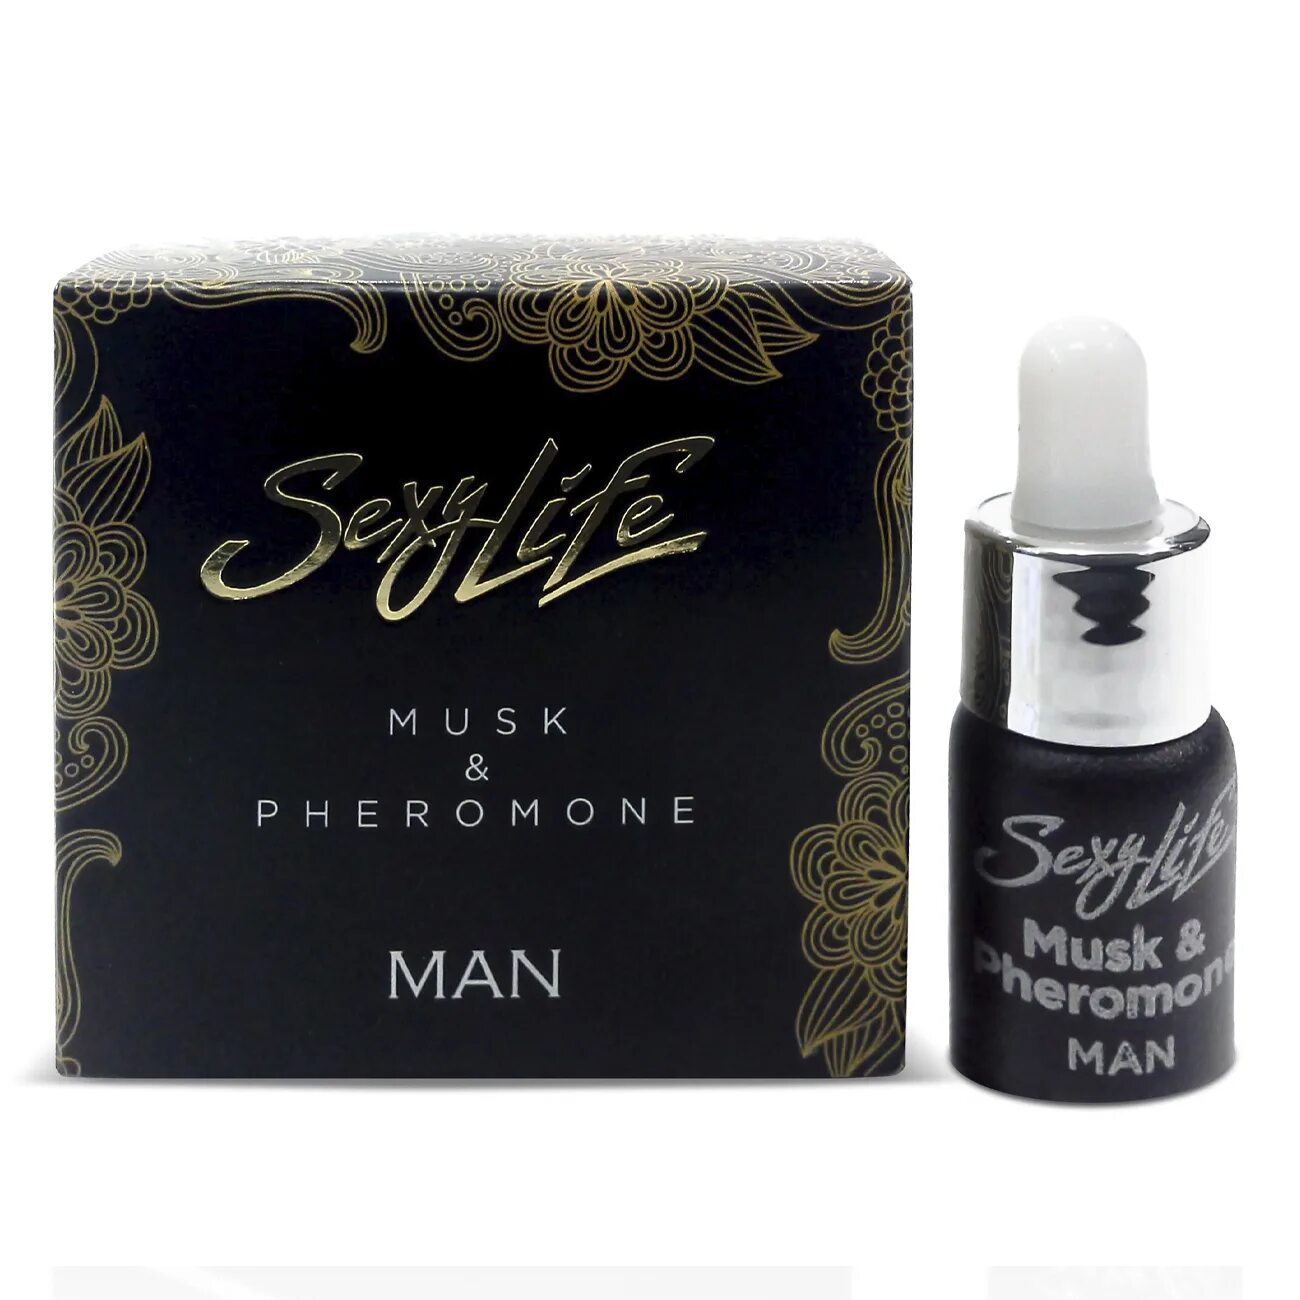 Parfume Prestige m мужские духи с феромонами sexy Life № 1, 10 мл. Концентрированные феромоны sexy Life мужские. Musk Pheromone man. Феромоны женщины для мужчины